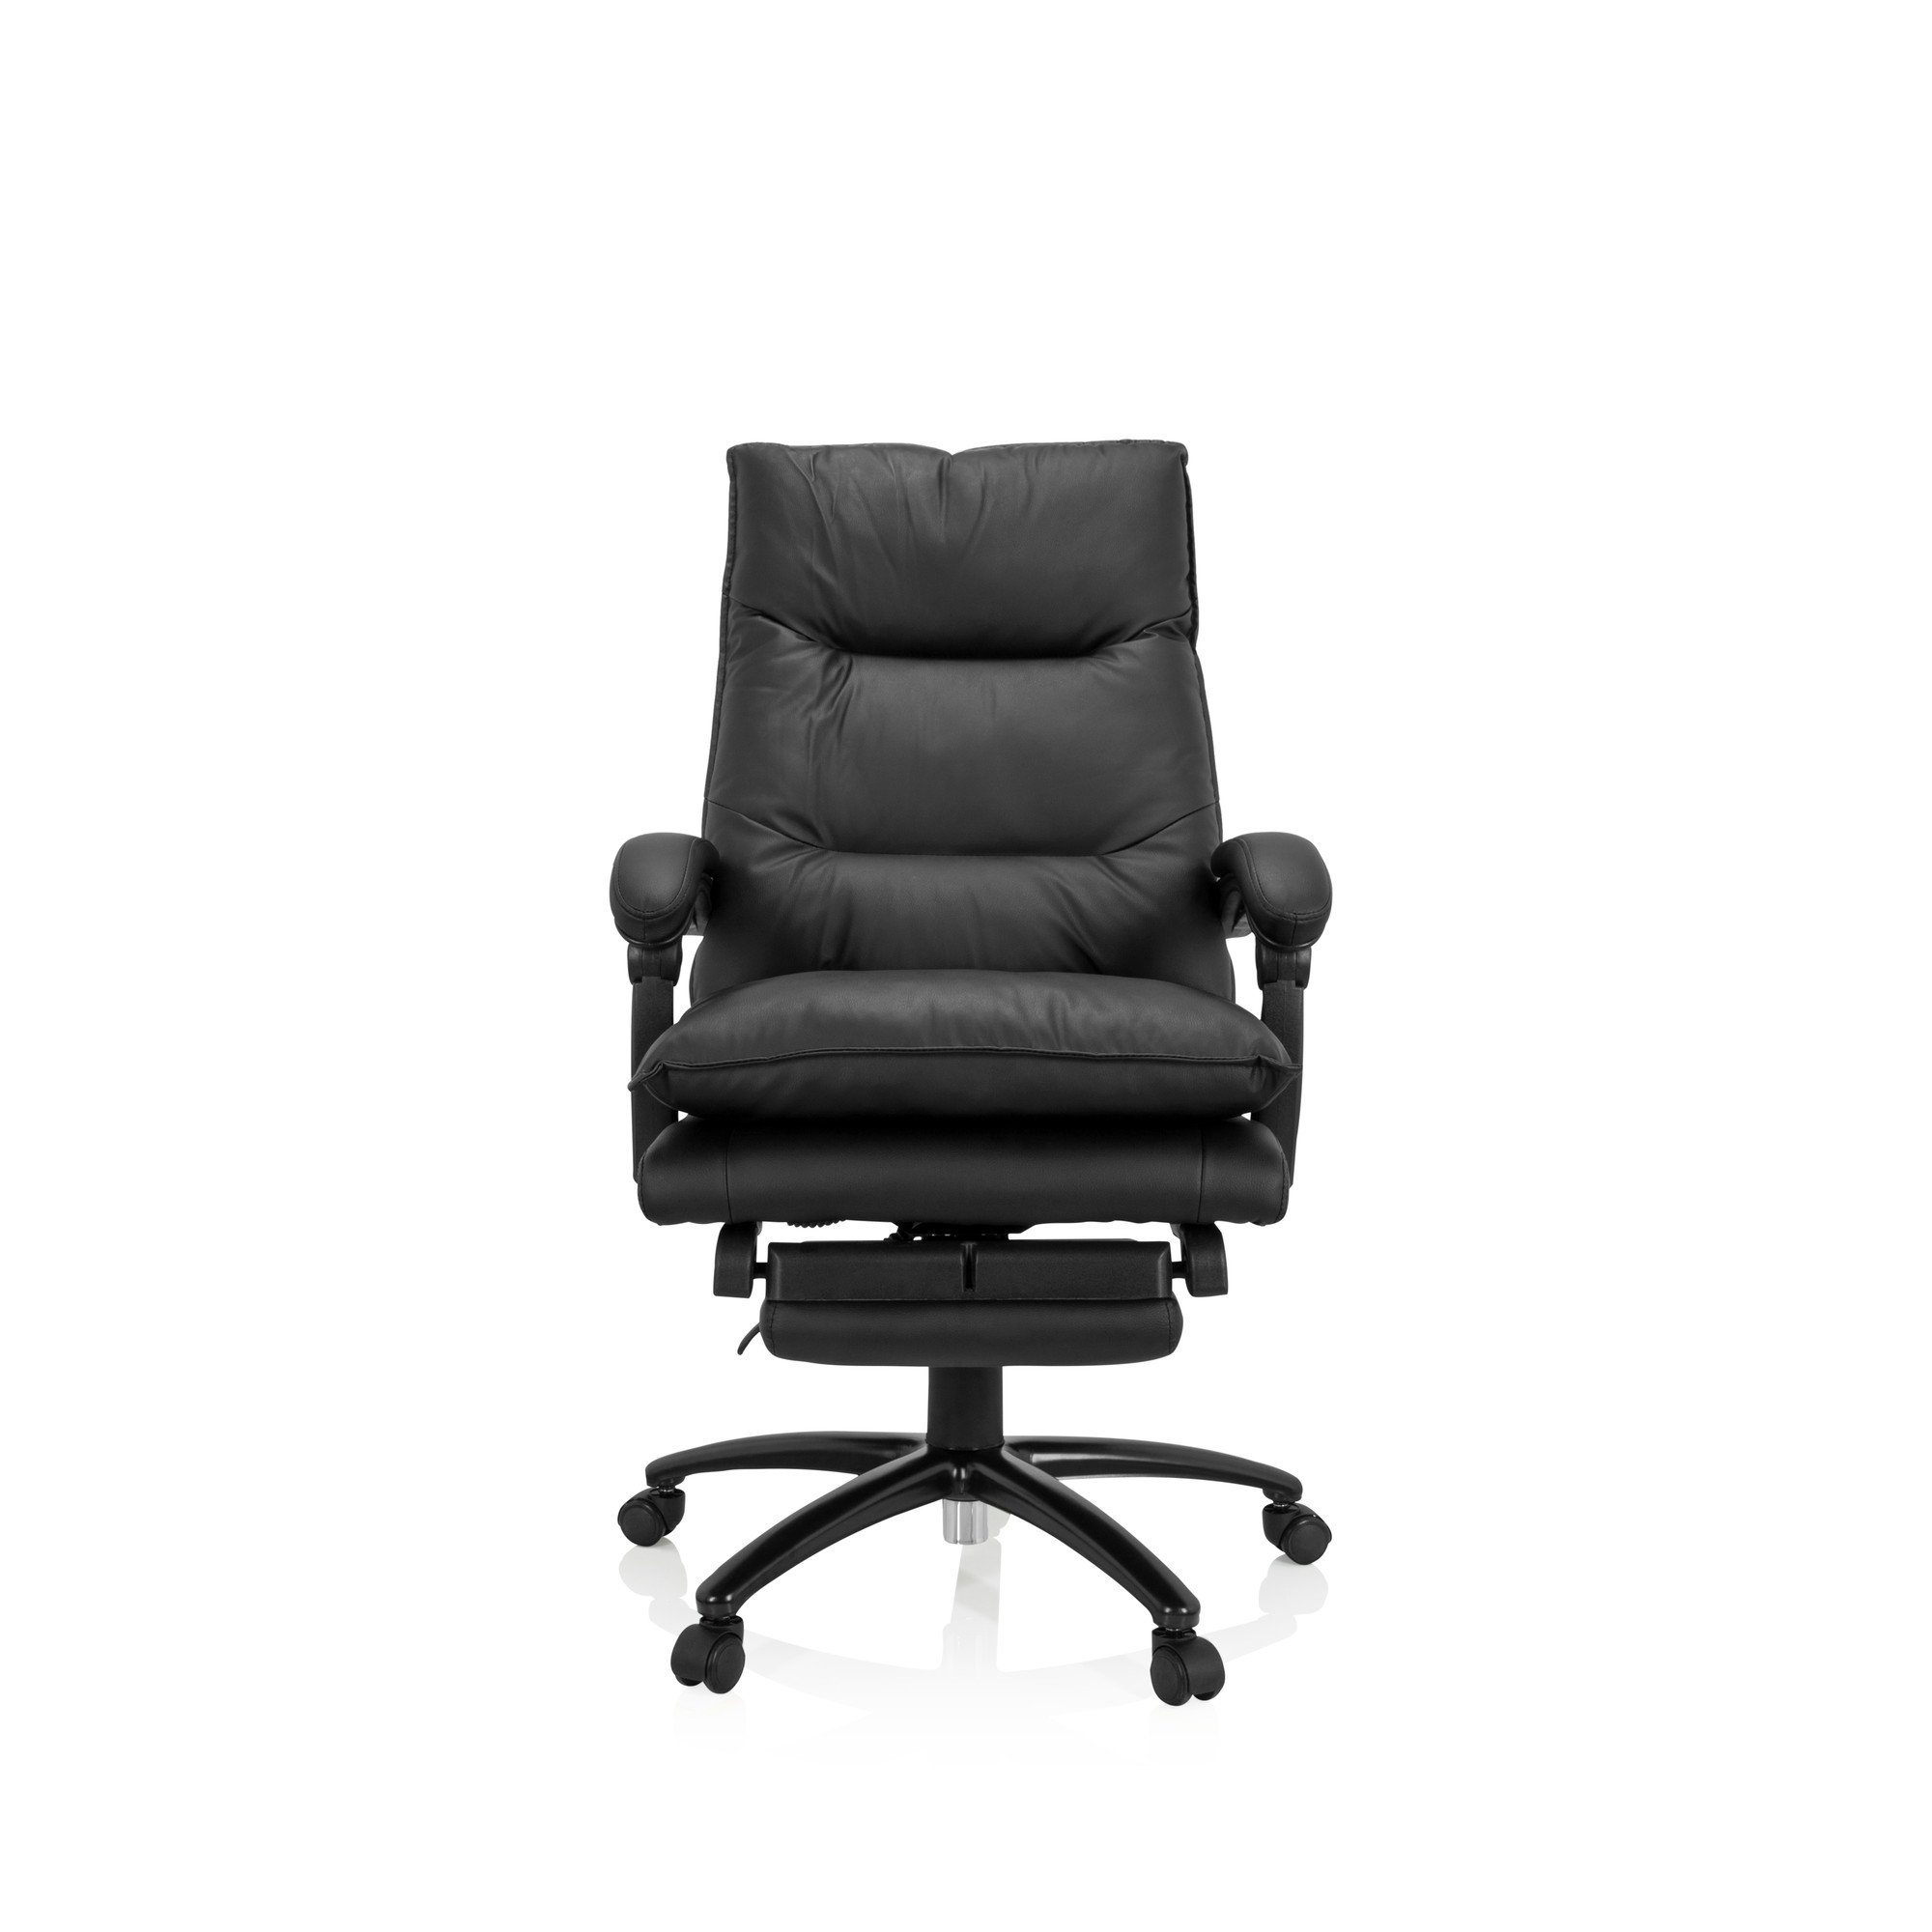 MyBuero Chefsessel Home Office Chefsessel RELAX CL 200 Kunstleder, Drehstuhl Bürostuhl ergonomisch